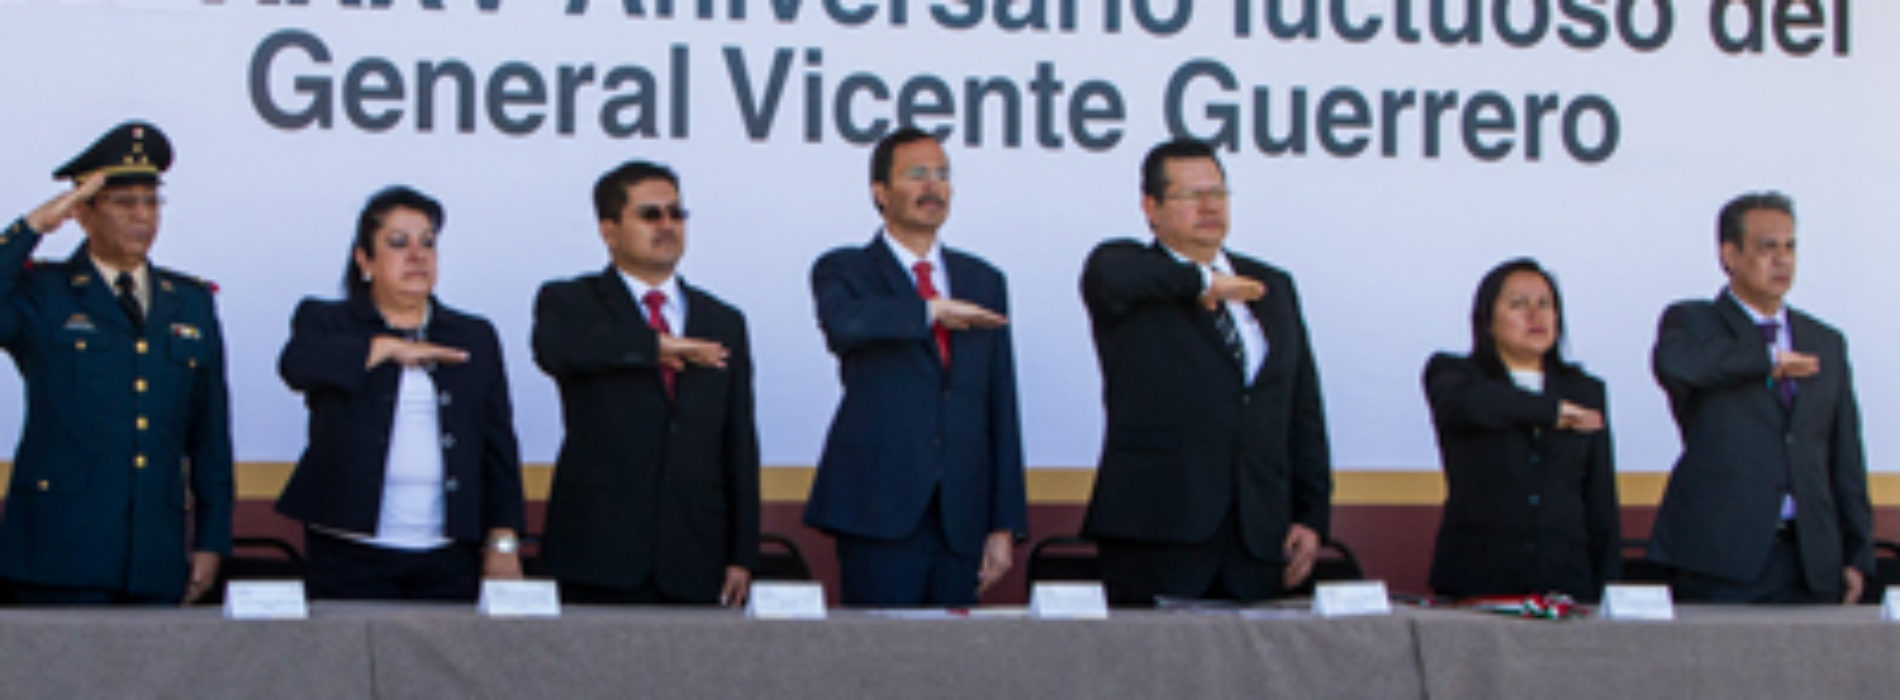 Conmemoran 185 Aniversario Luctuoso del General Vicente Guerrero